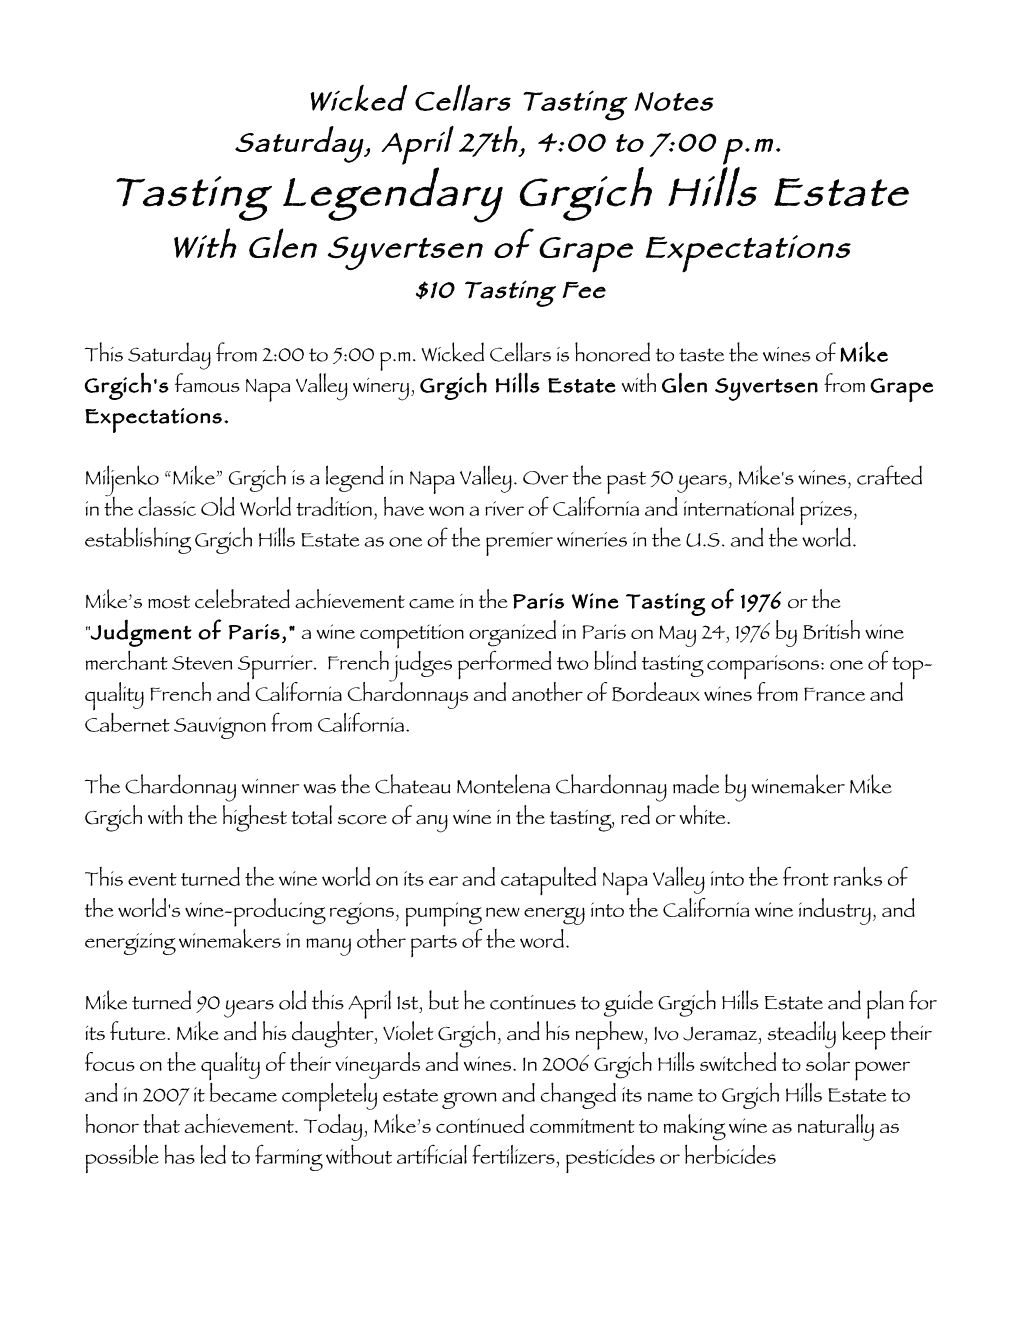 Tasting Legendary Grgich Hills Estate with Glen Syvertsen of Grape Expectations $10 Tasting Fee